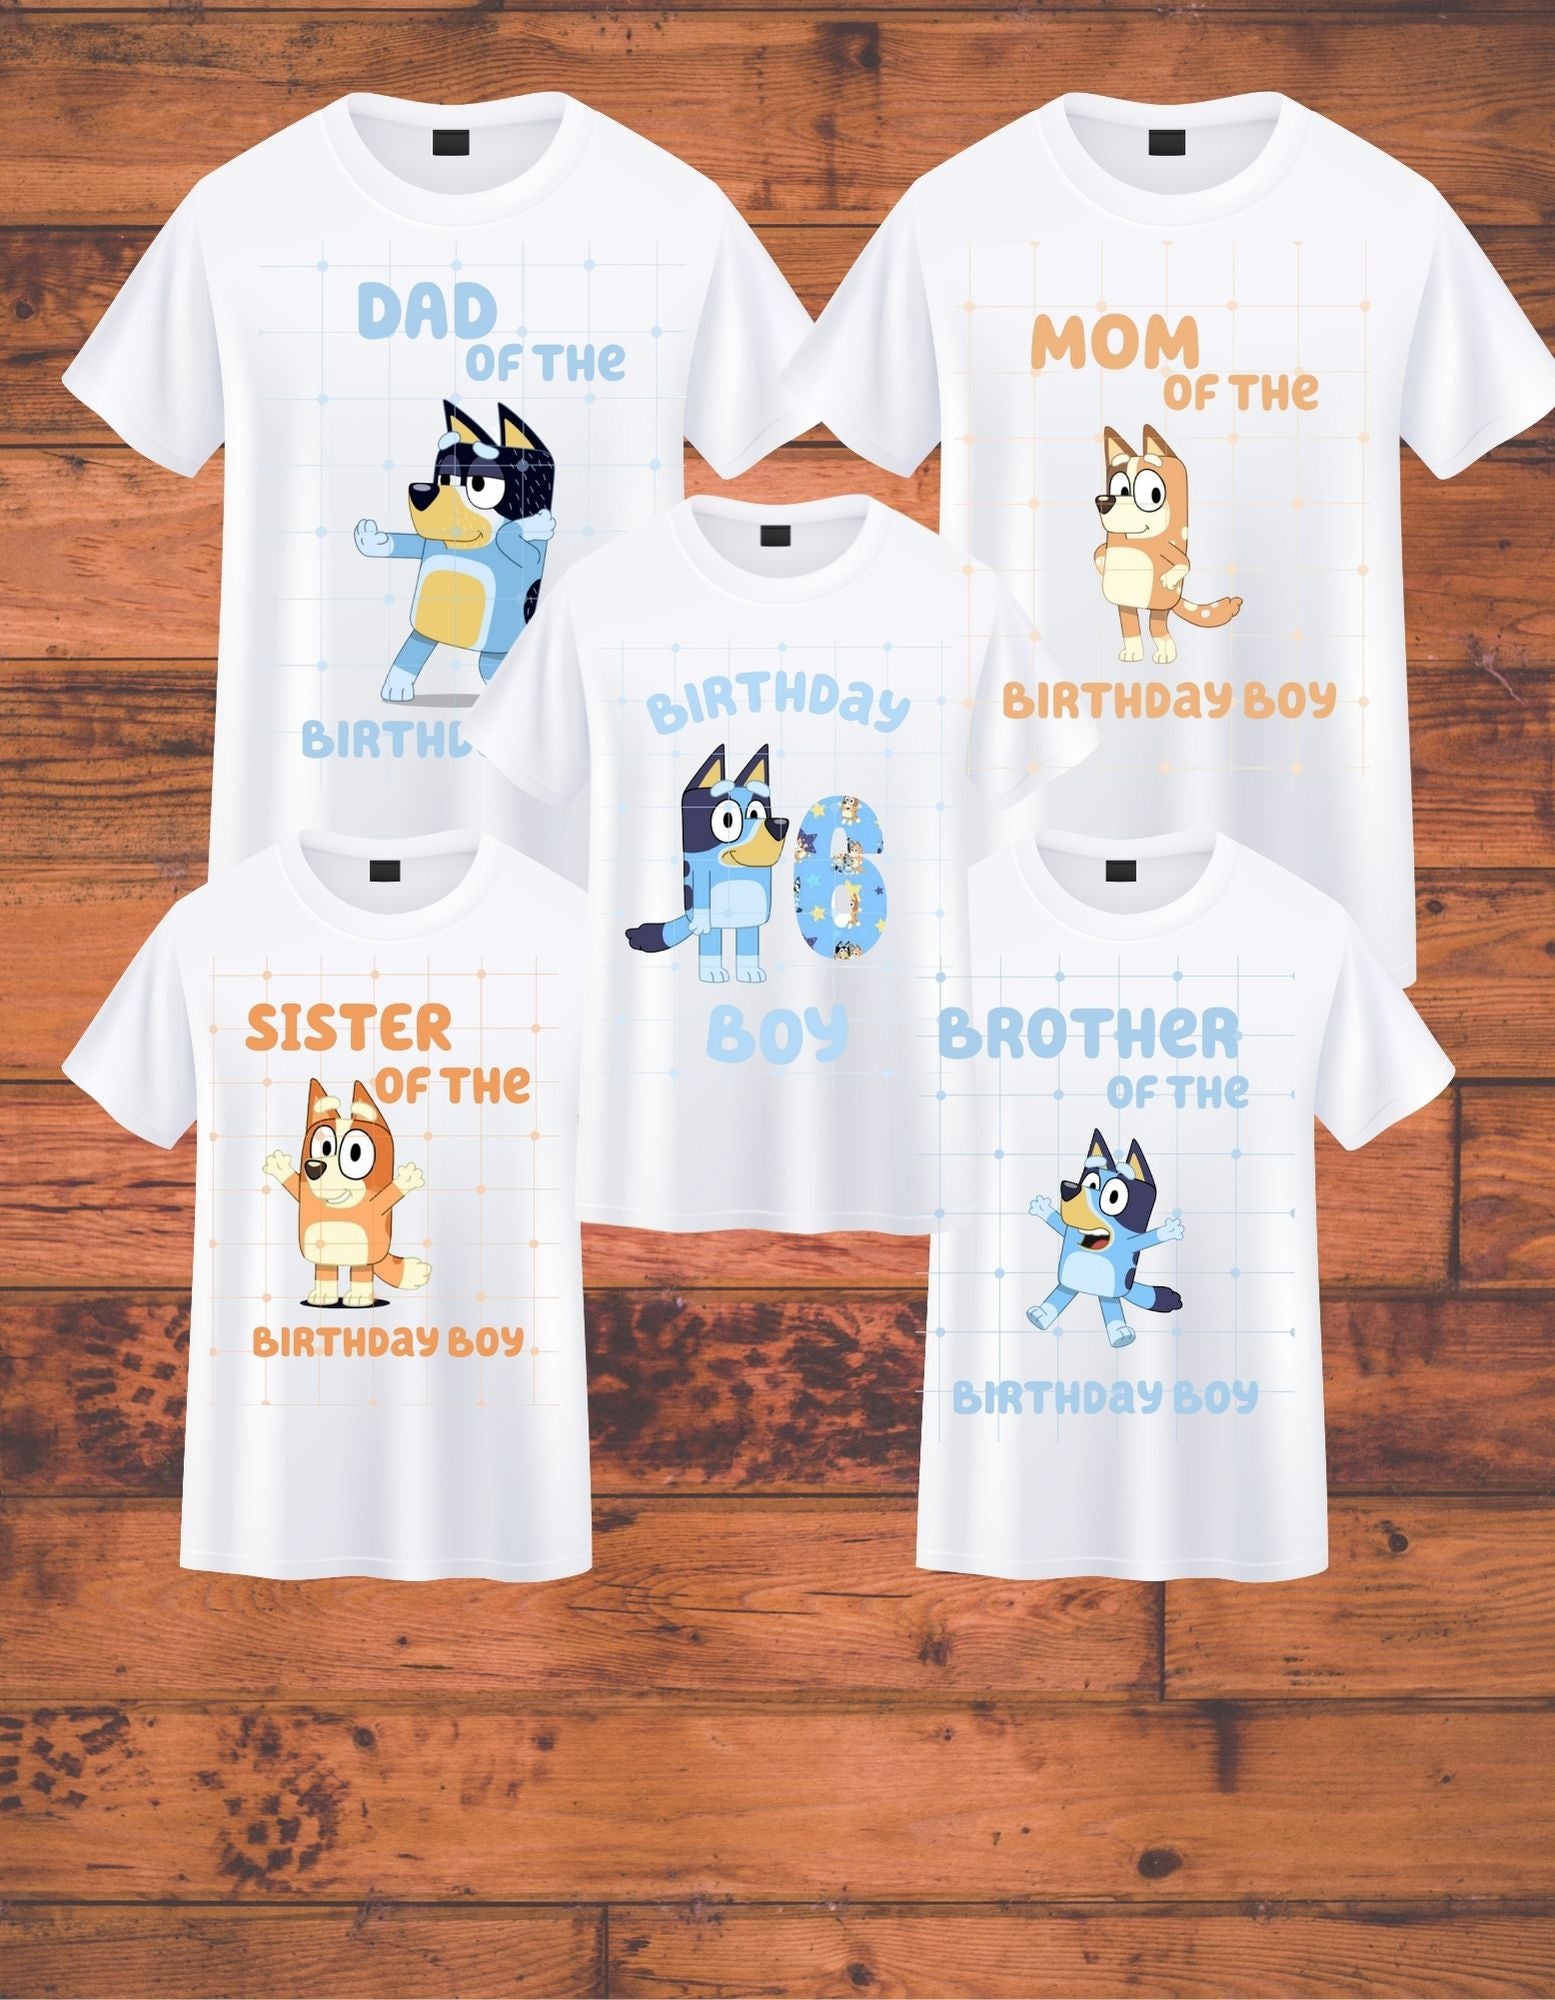 Bluey Family Shirts